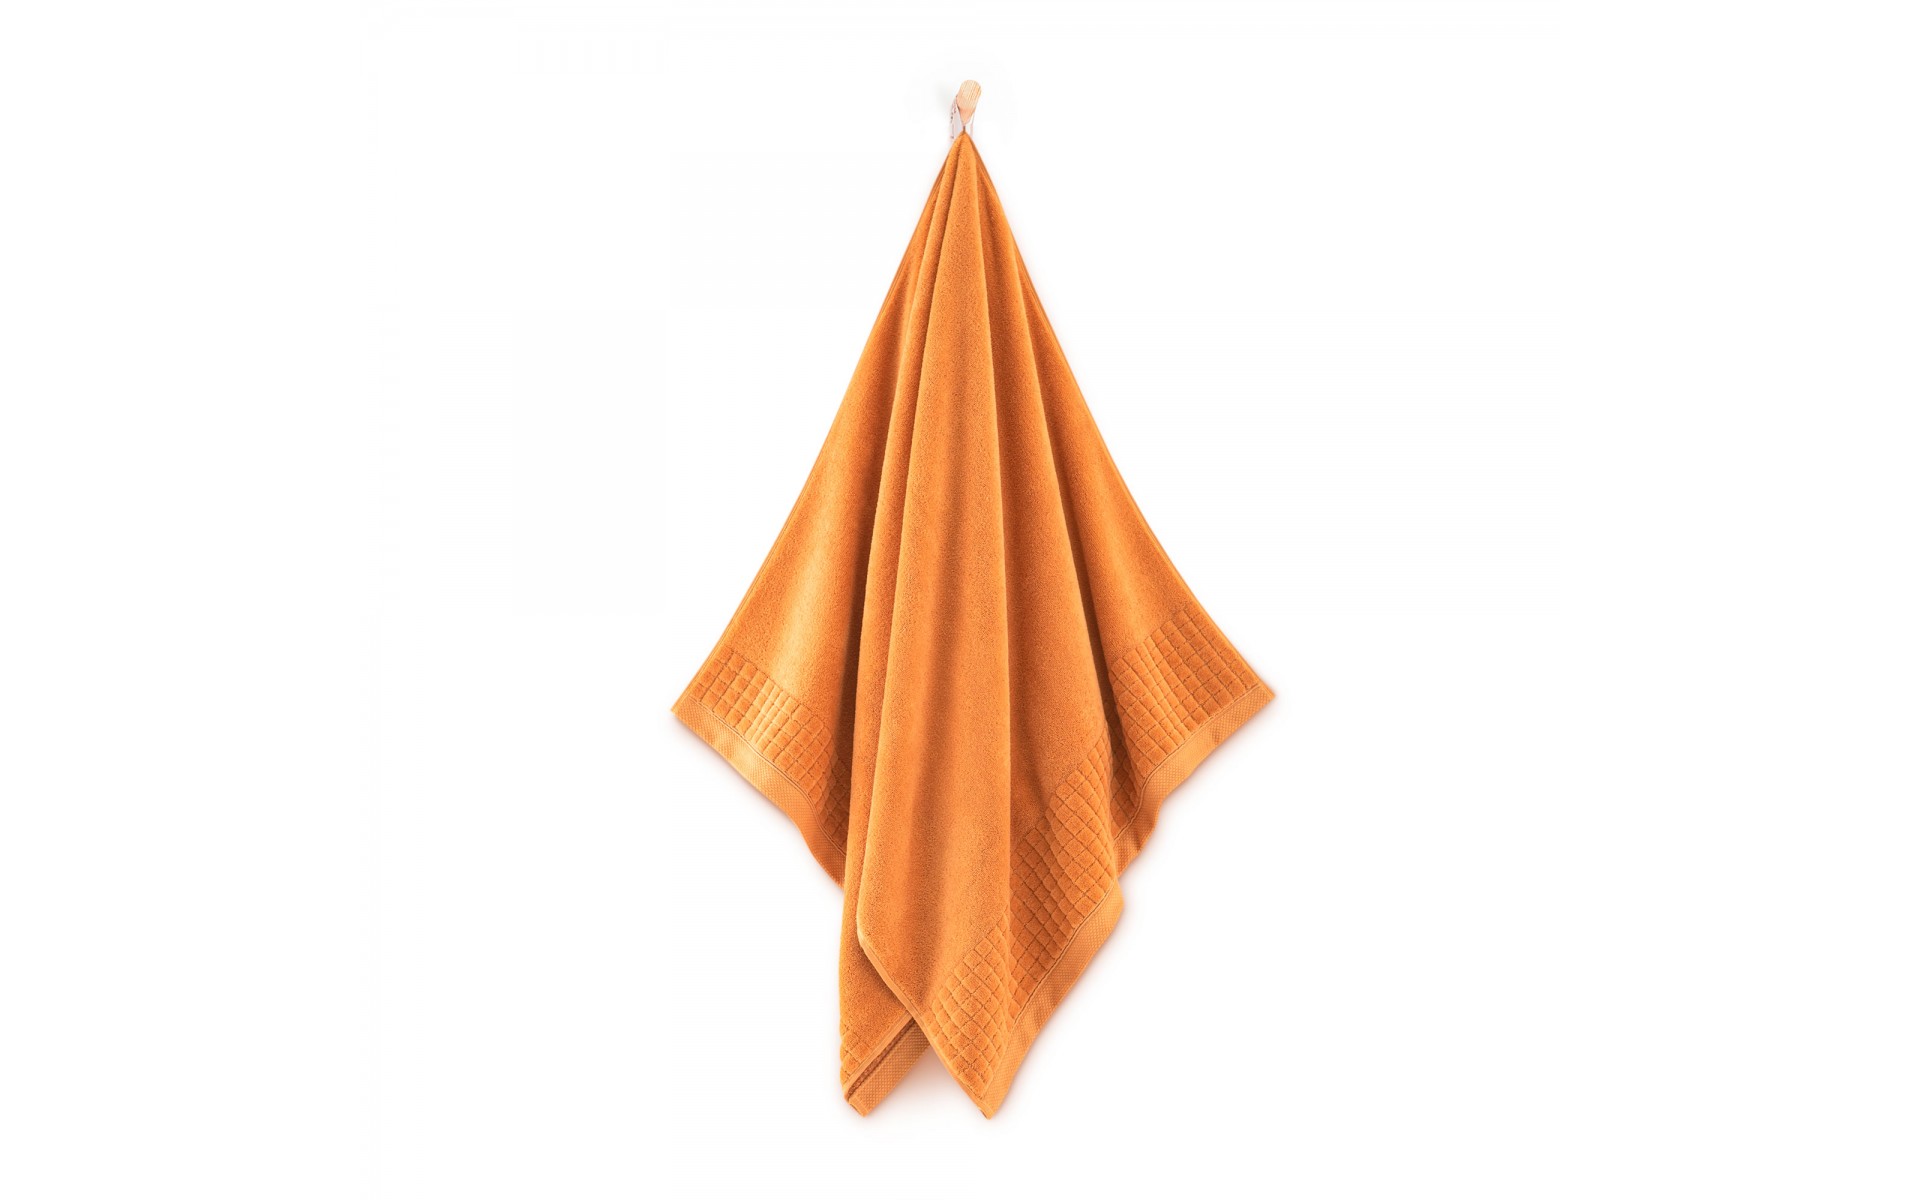 ręcznik PAULO 3 AB pomarańczowy-pm - 9839